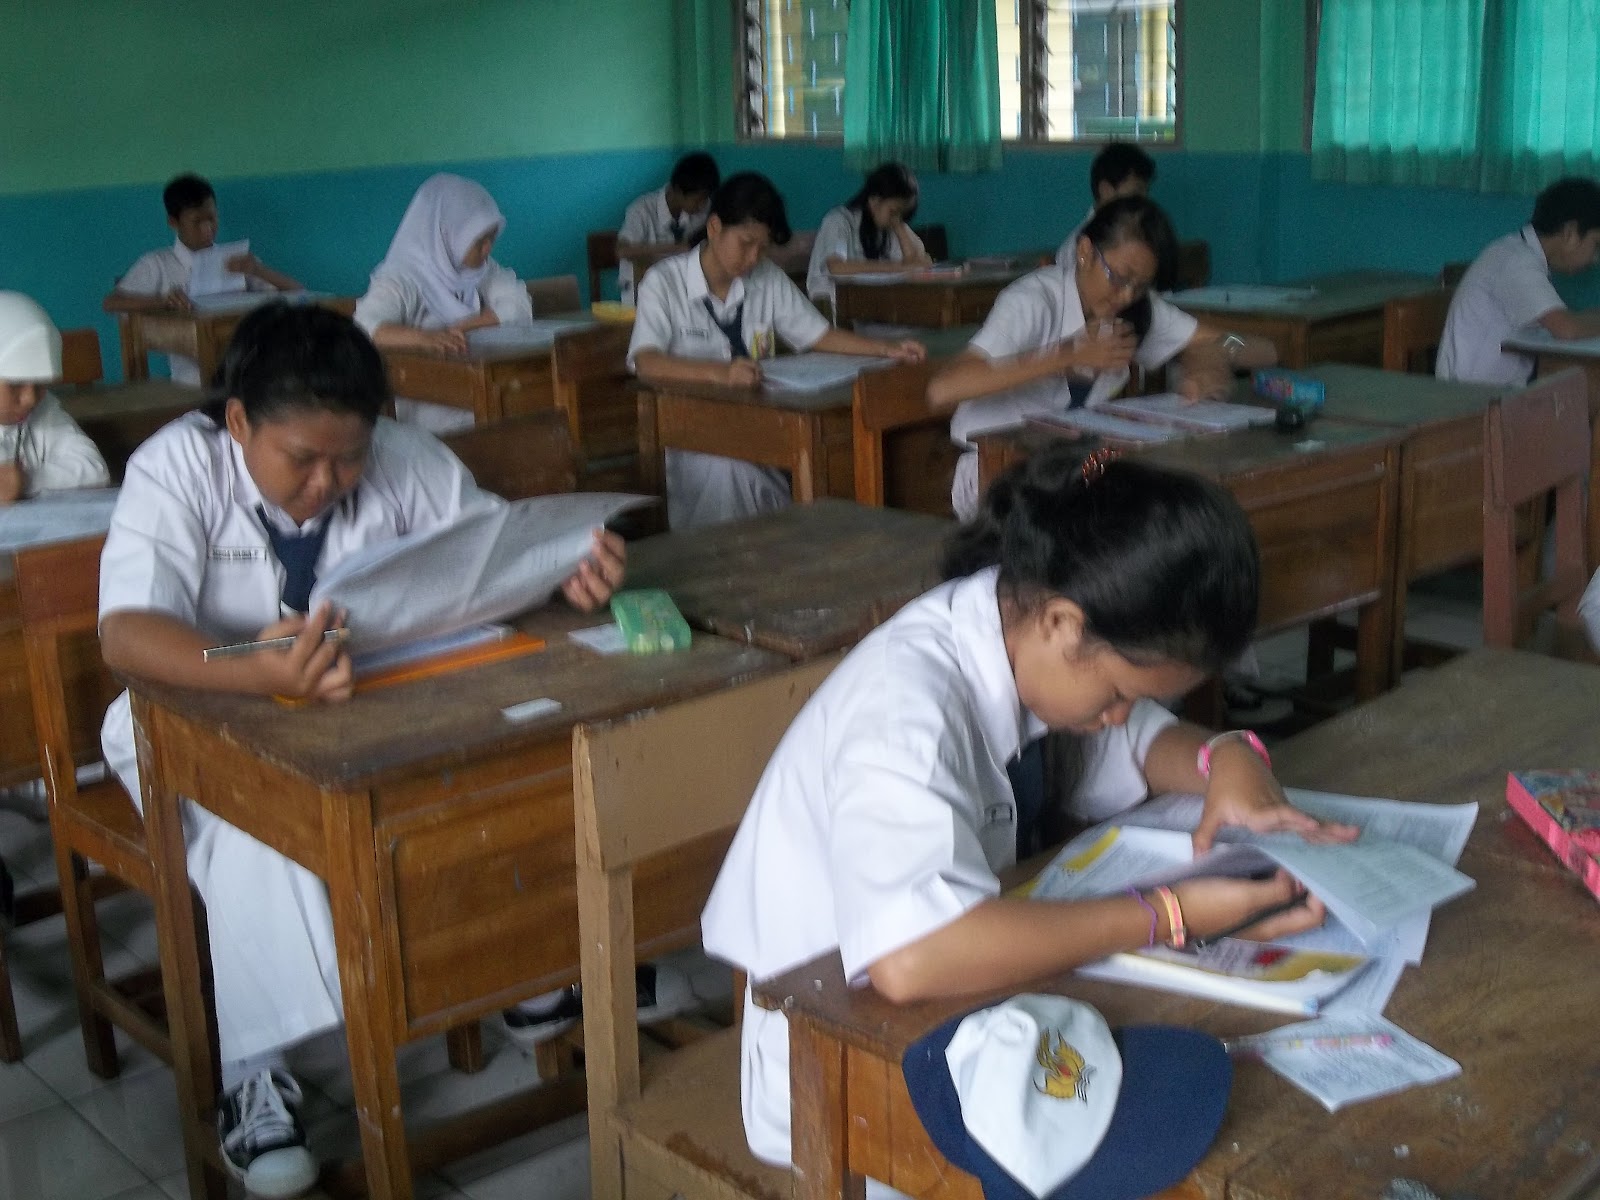 Hari ini Senin 6 Pebruari 2012 adalah hari pertama dimana seluruh siswa kelas IX SMPN 141 Jakarta mengikuti Tes Ujicoba Kompetensi Peserta Didik TKUPD